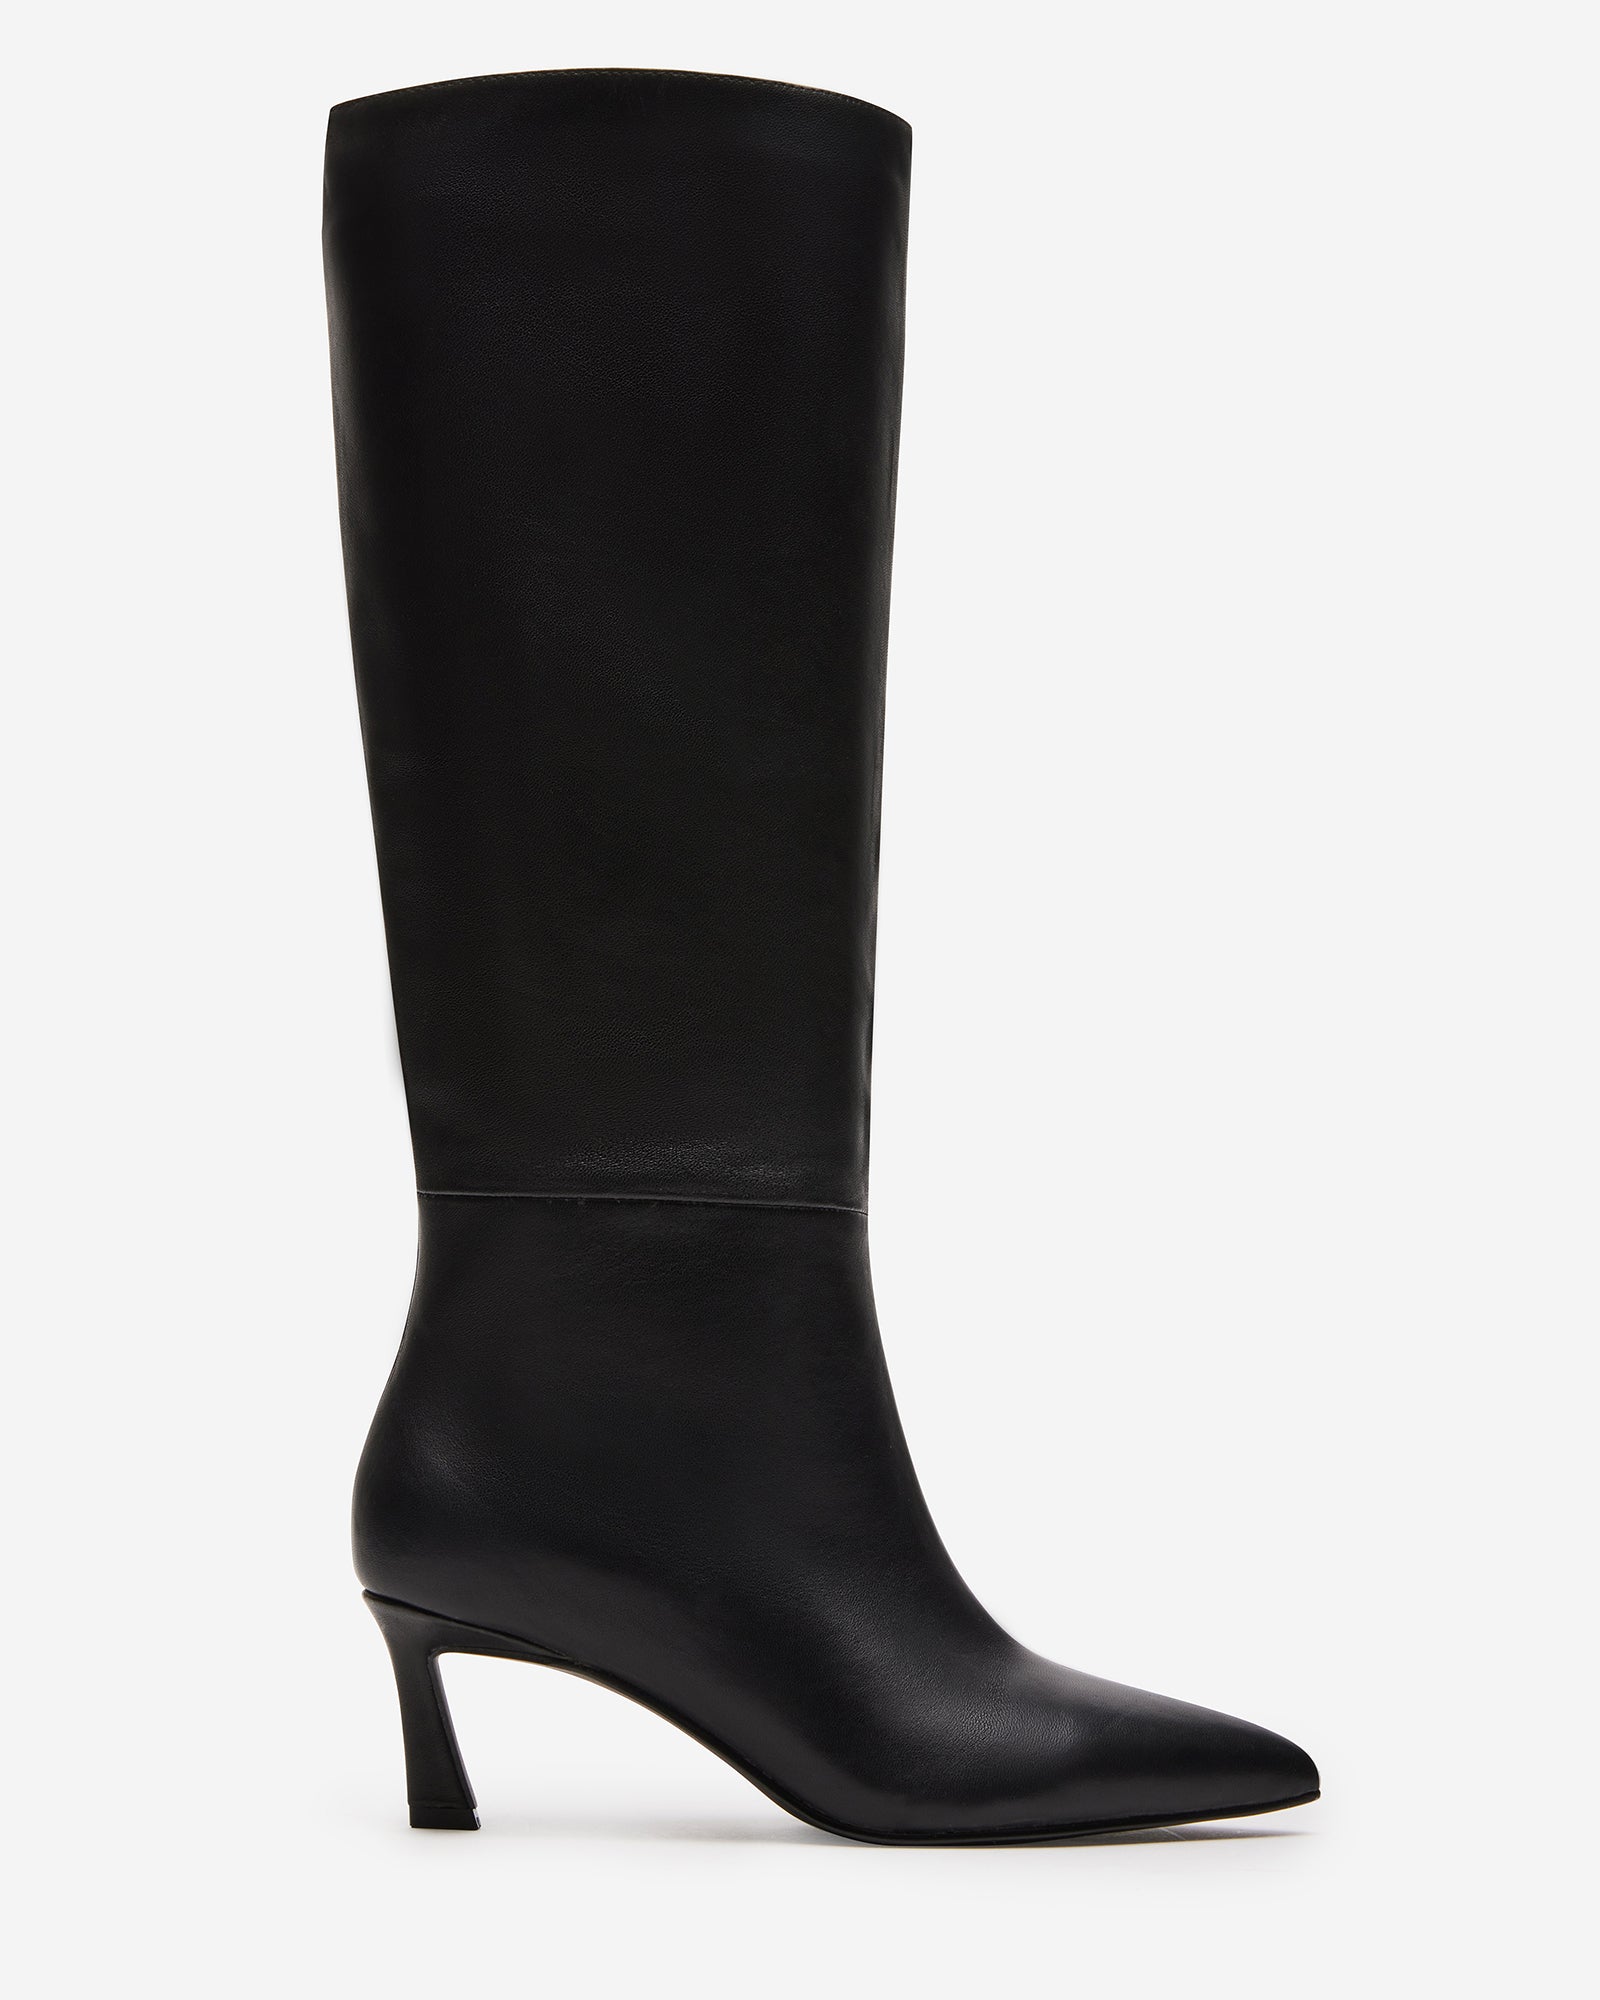 LAVAN Black Leather Kitten Heel Knee High Boot | Women's Boots